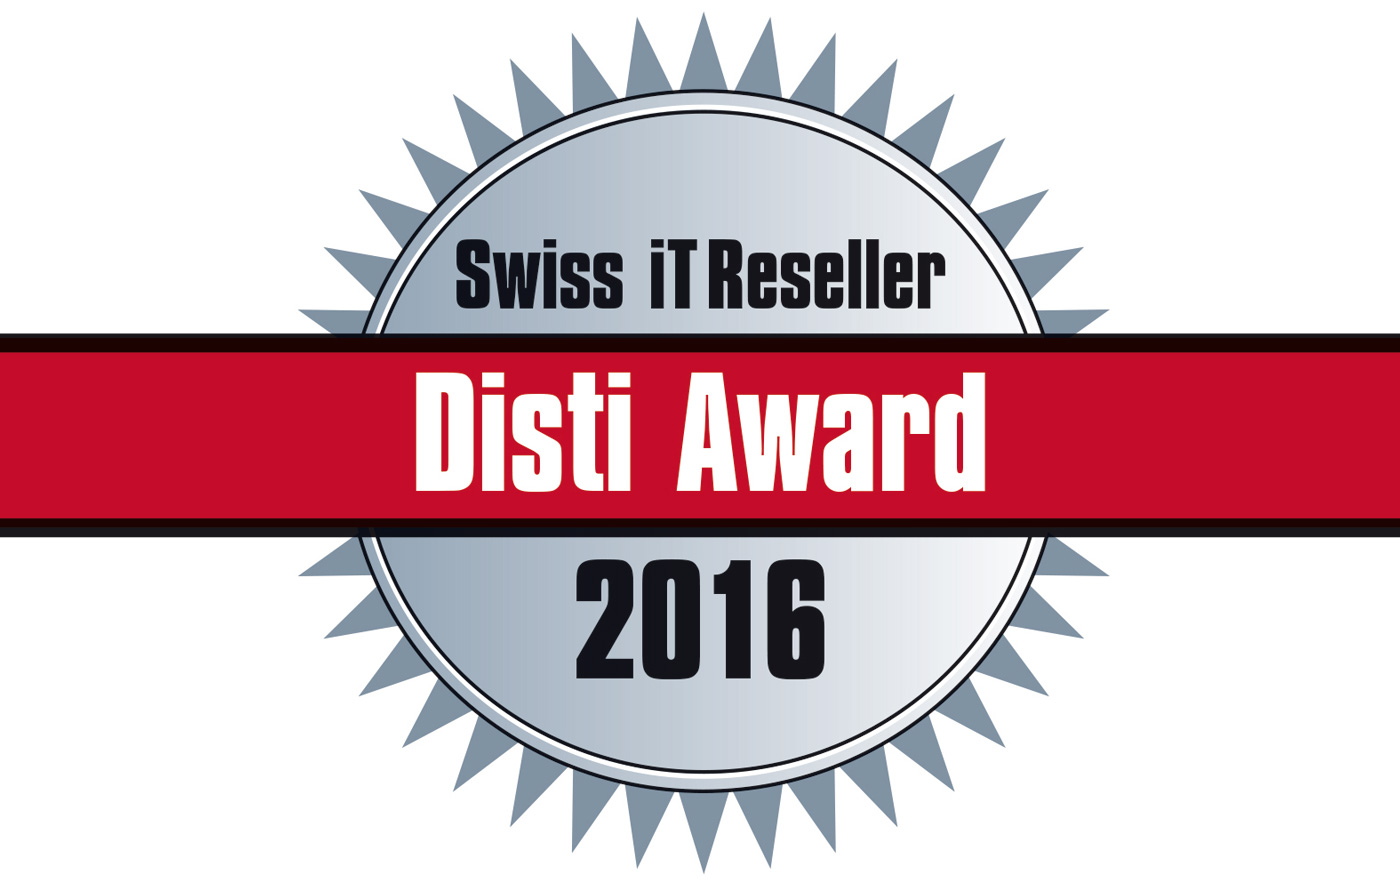 Disti Award 2016: Noch bis 10. Oktober abstimmen